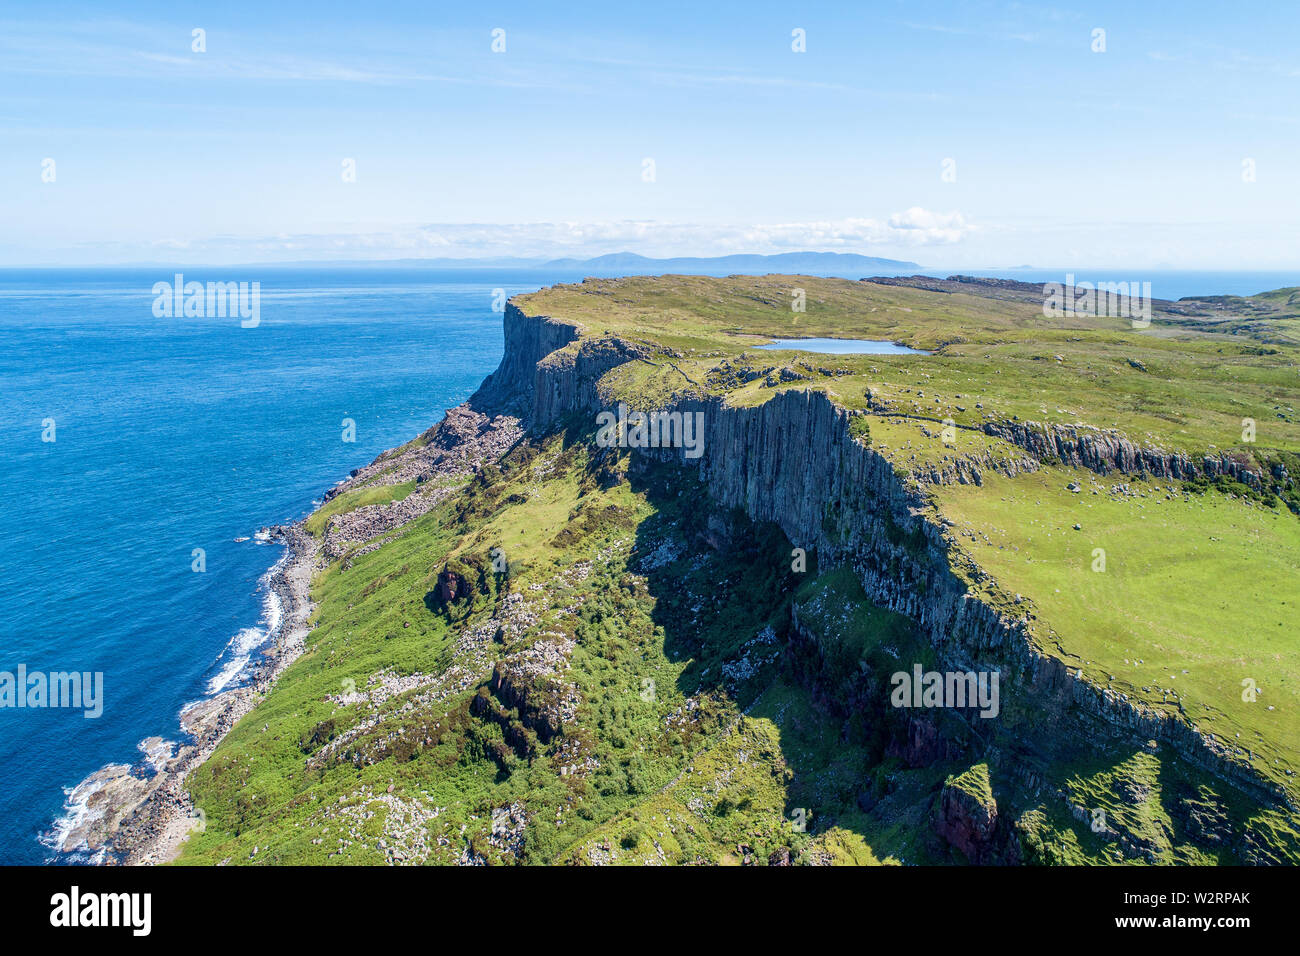 Fair Head big Cliff und landspitze an der nord-östlichen Ecke der Grafschaft Antrim, Nordirland, Großbritannien. Luftbild mit Atlantik und einem See. Stockfoto